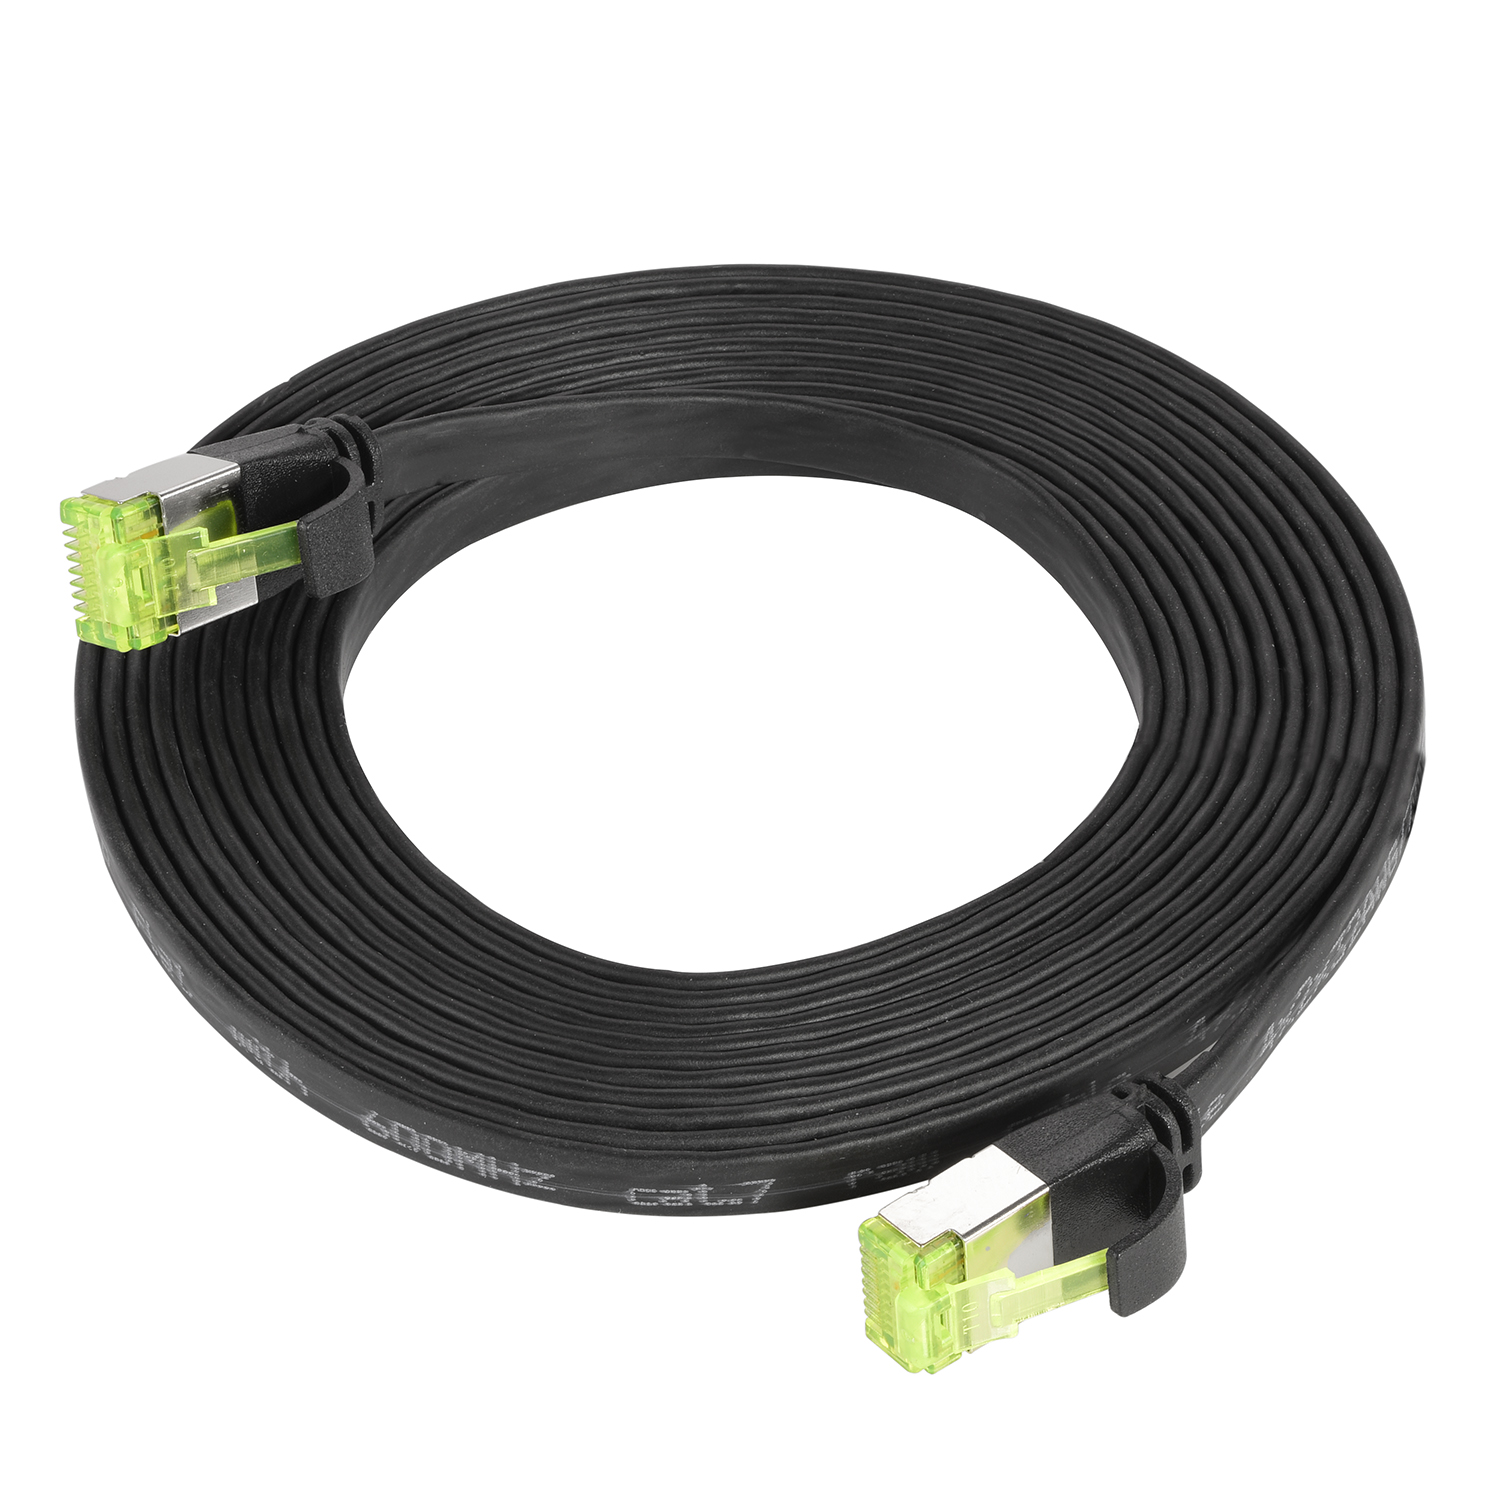 TPFNET 3m Patchkabel / GBit, Flachkabel 3 Netzwerkkabel, 10 m schwarz, U/FTP